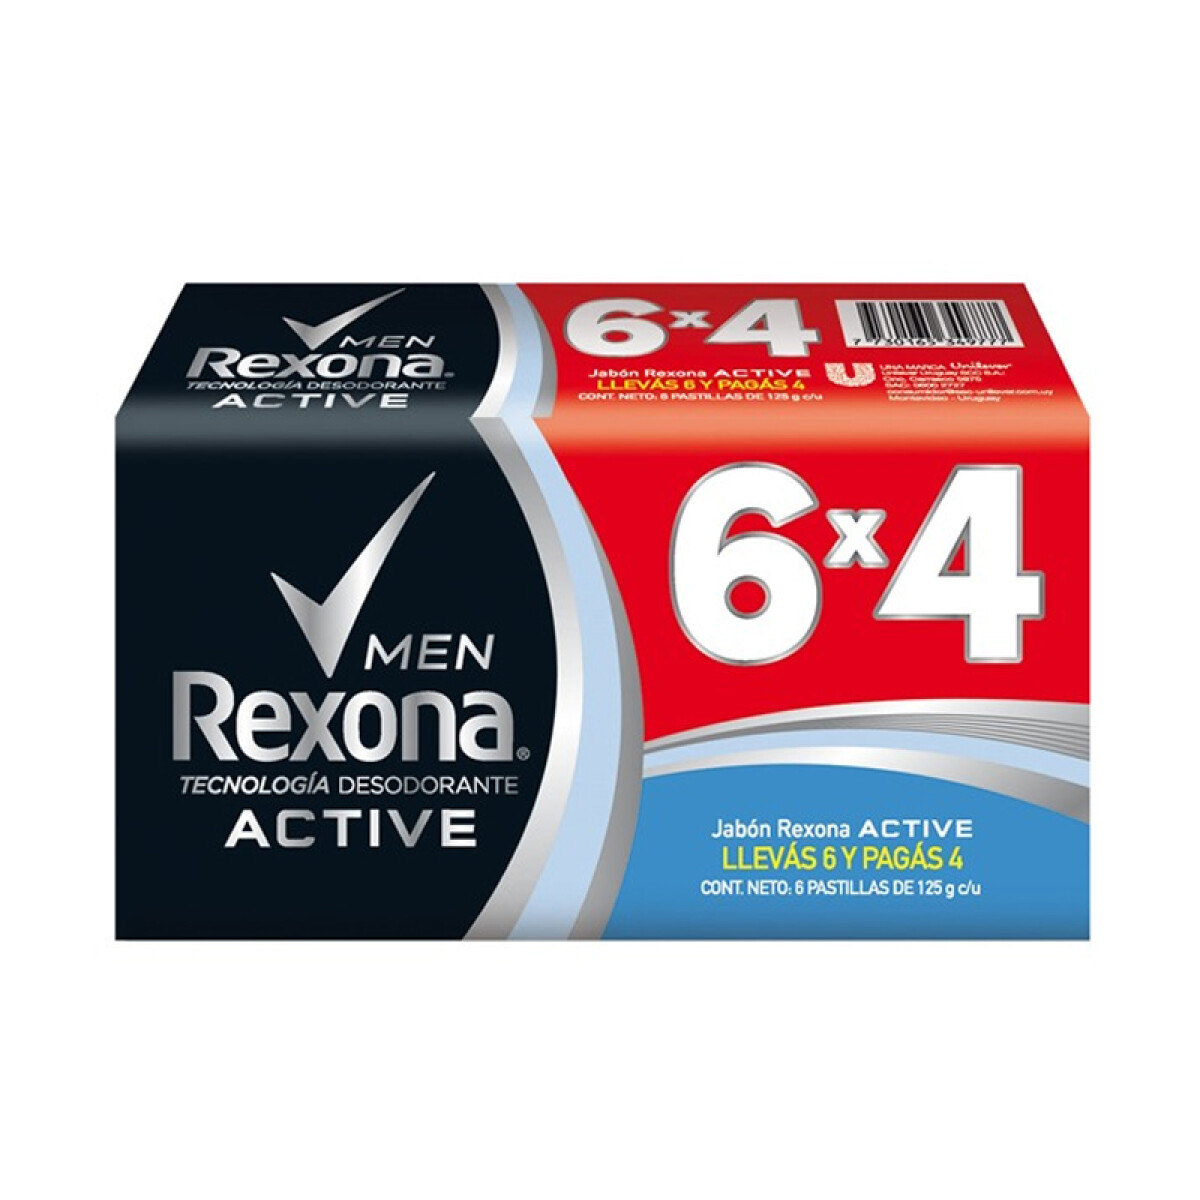 Jabón Rexona 6x4 125grs - Active Men 